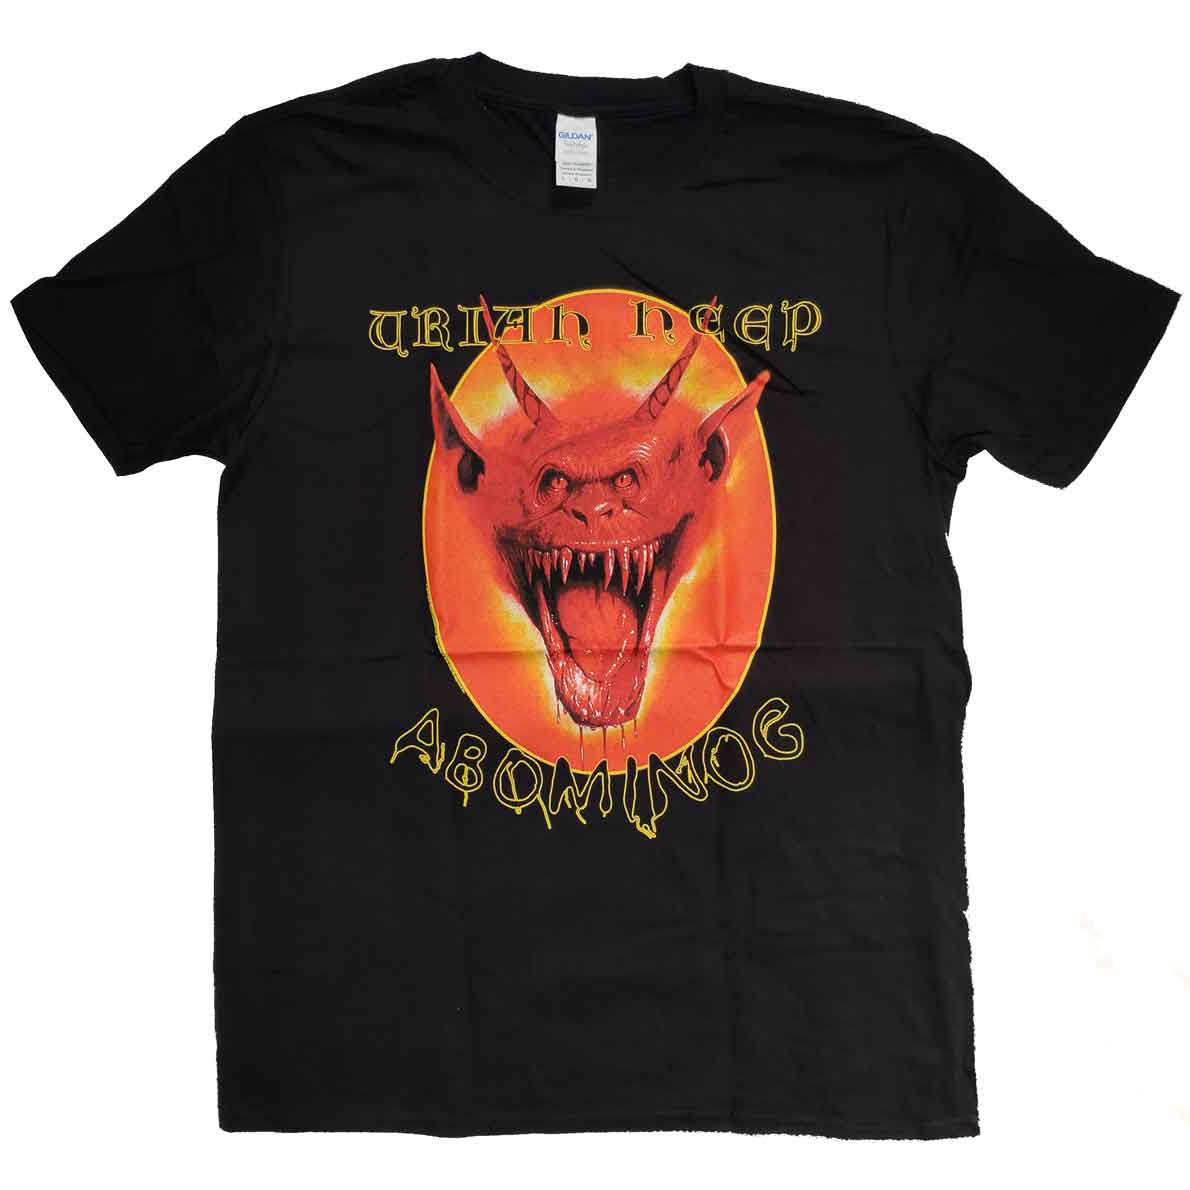 Uriah Heap T Shirt - Abominog 100% Official